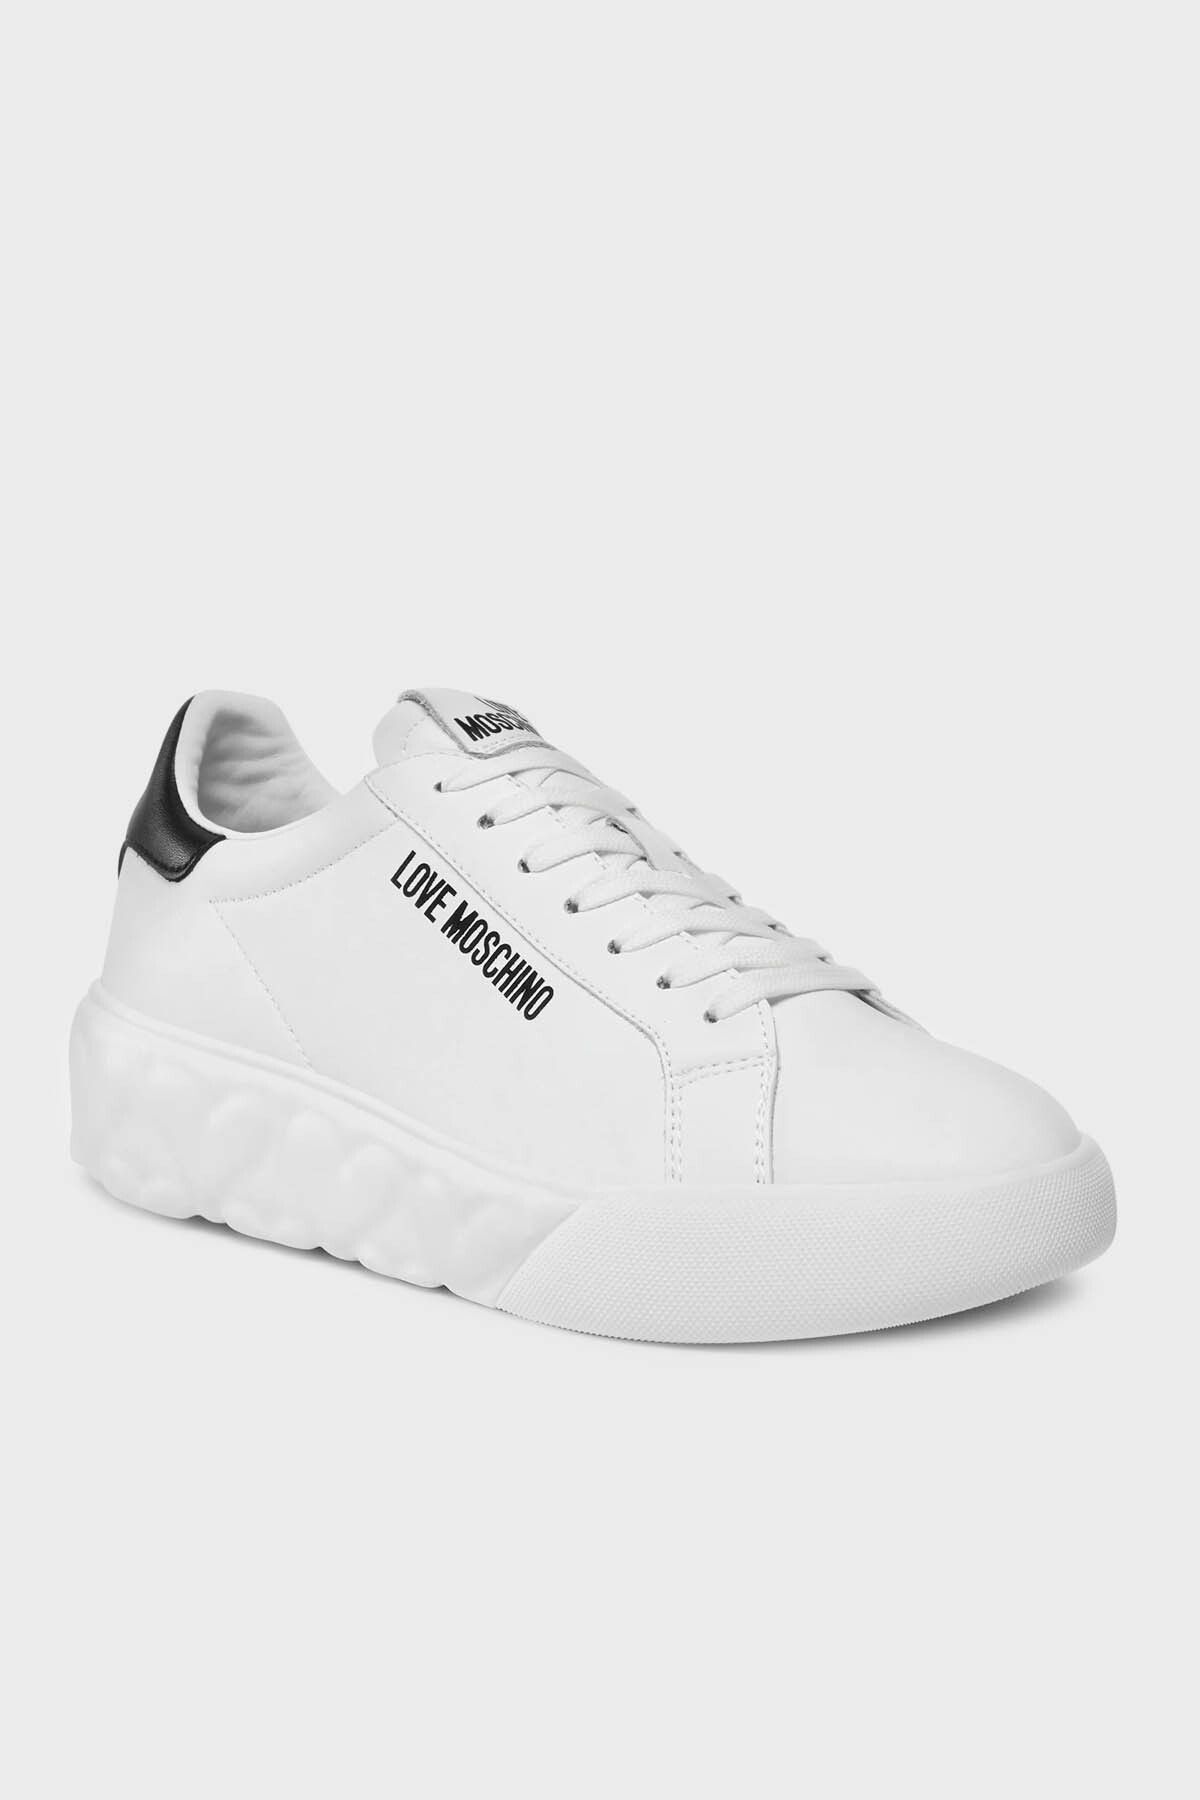 Moschino Logolu Kalın Tabanlı Deri Sneaker Ayakkabı  AYAKKABI JA15034G1IIA110A